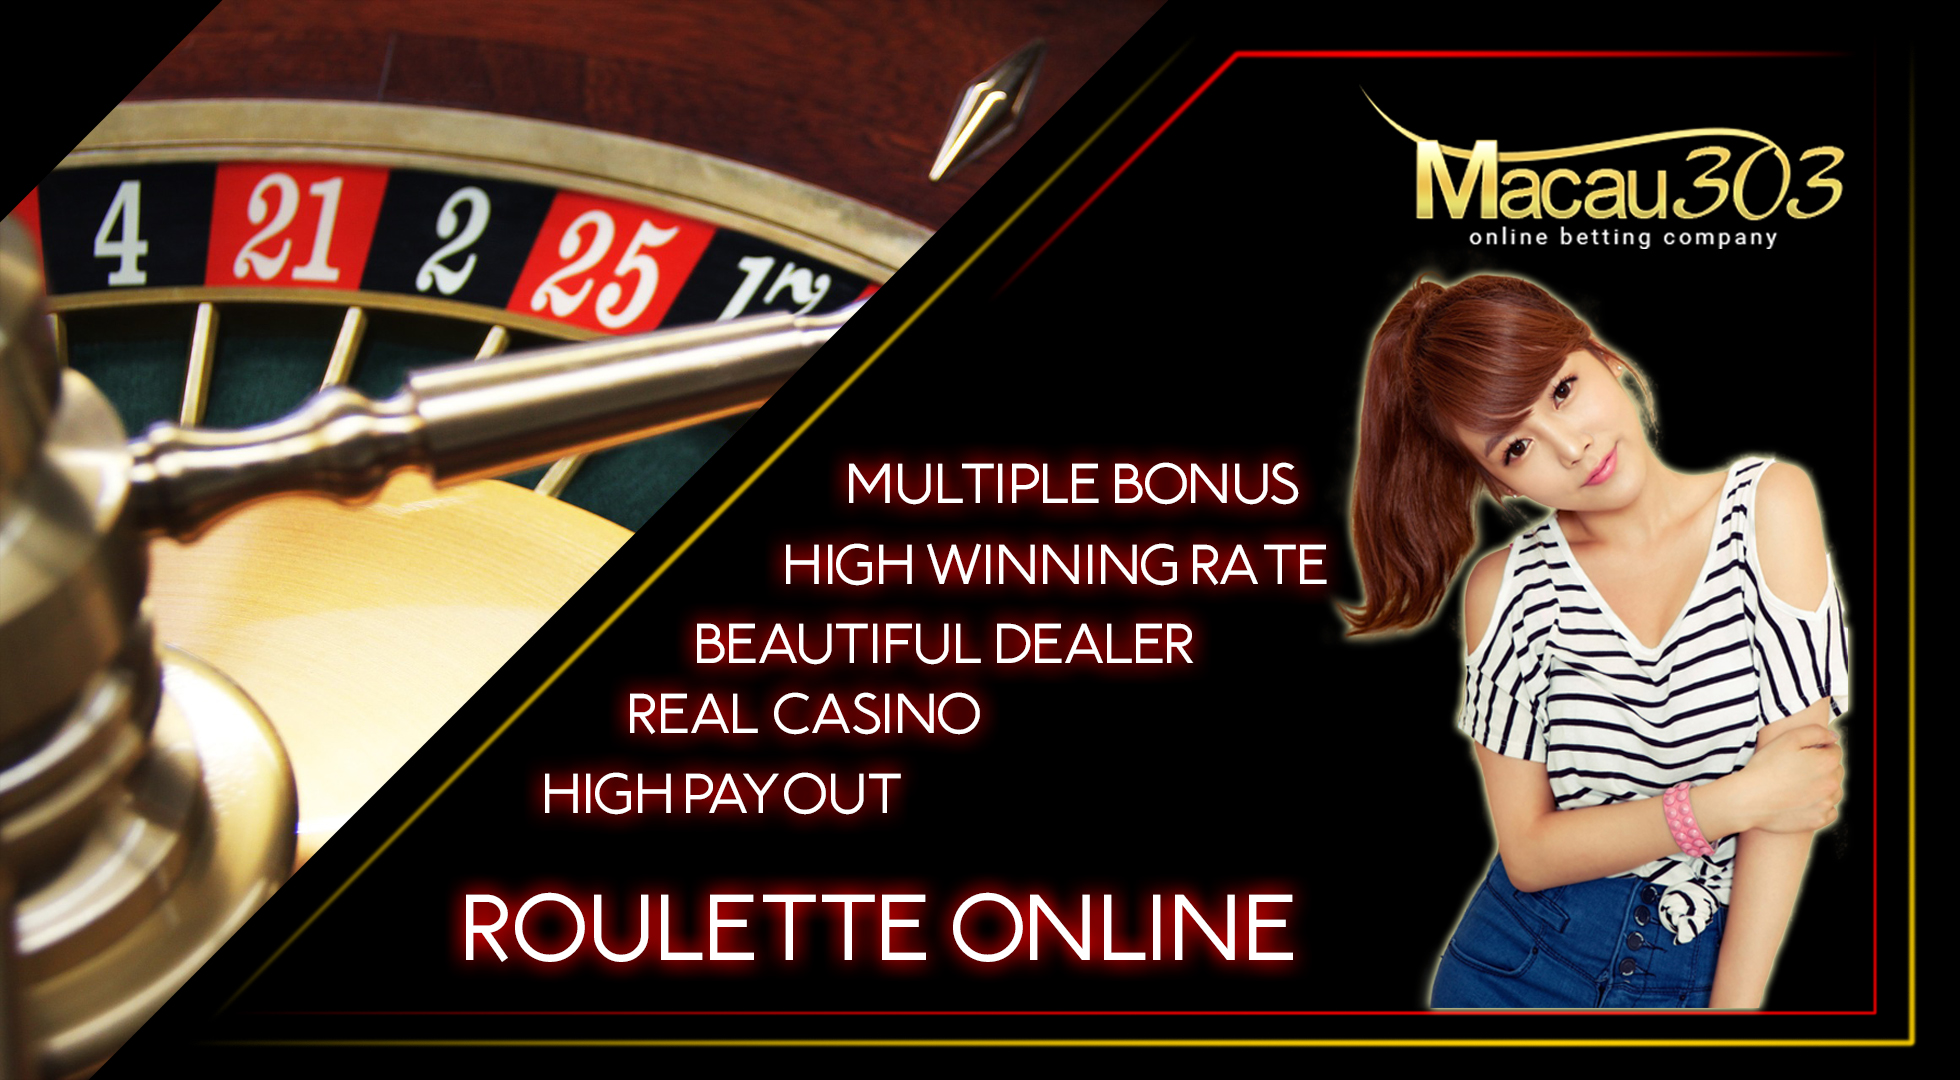 Panduan Cara Bermain Roulette Online di Macau303